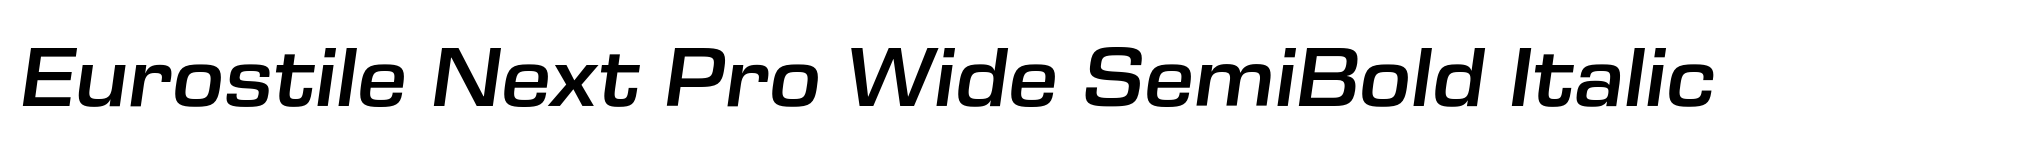 Eurostile Next Pro Wide SemiBold Italic image